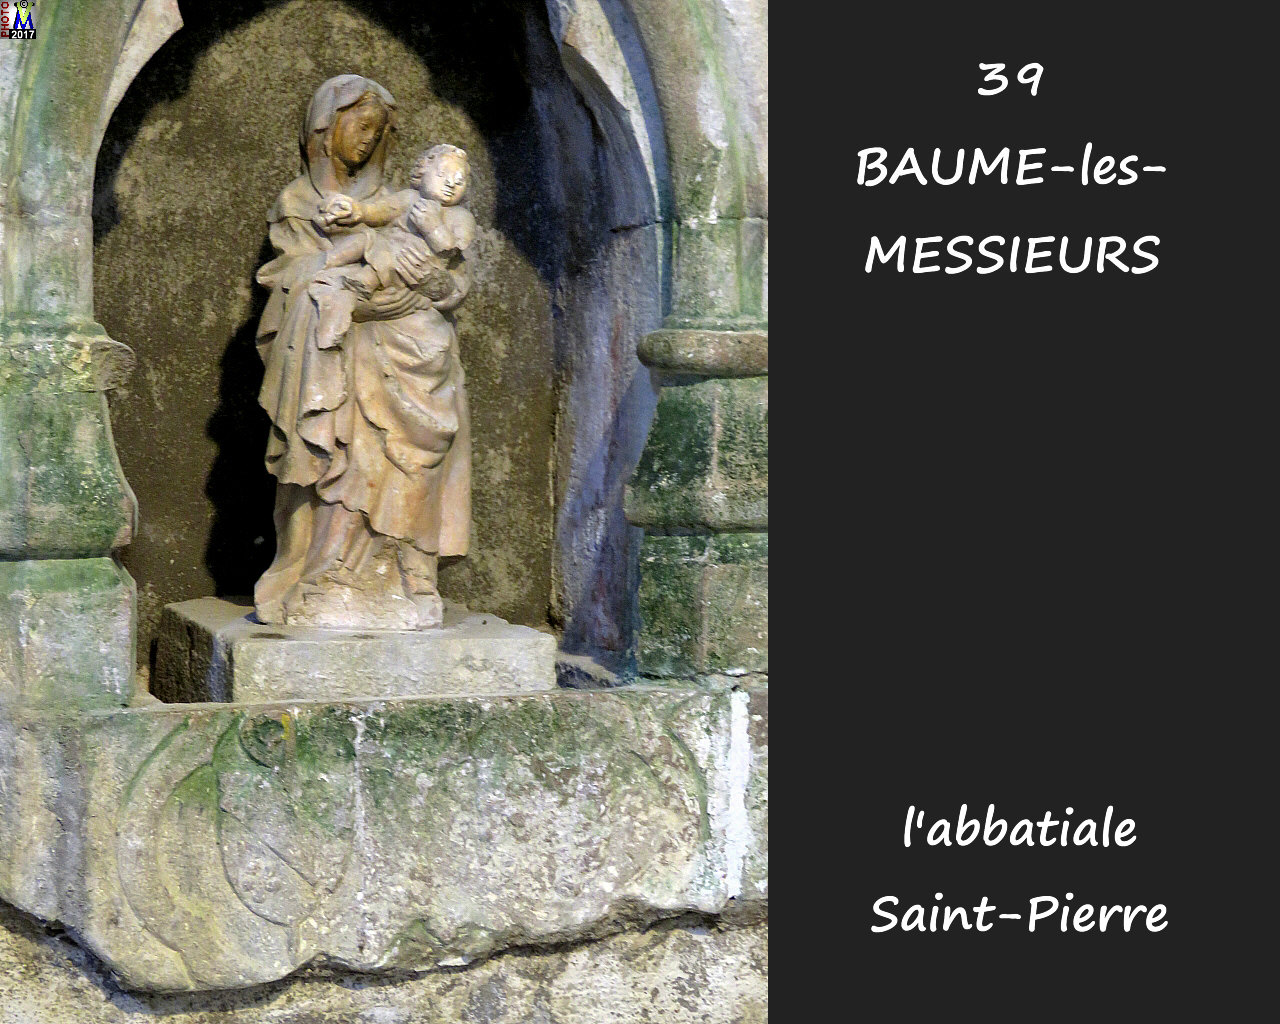 39BAUME-LES-MESSIEURS_abbatiale_288.jpg